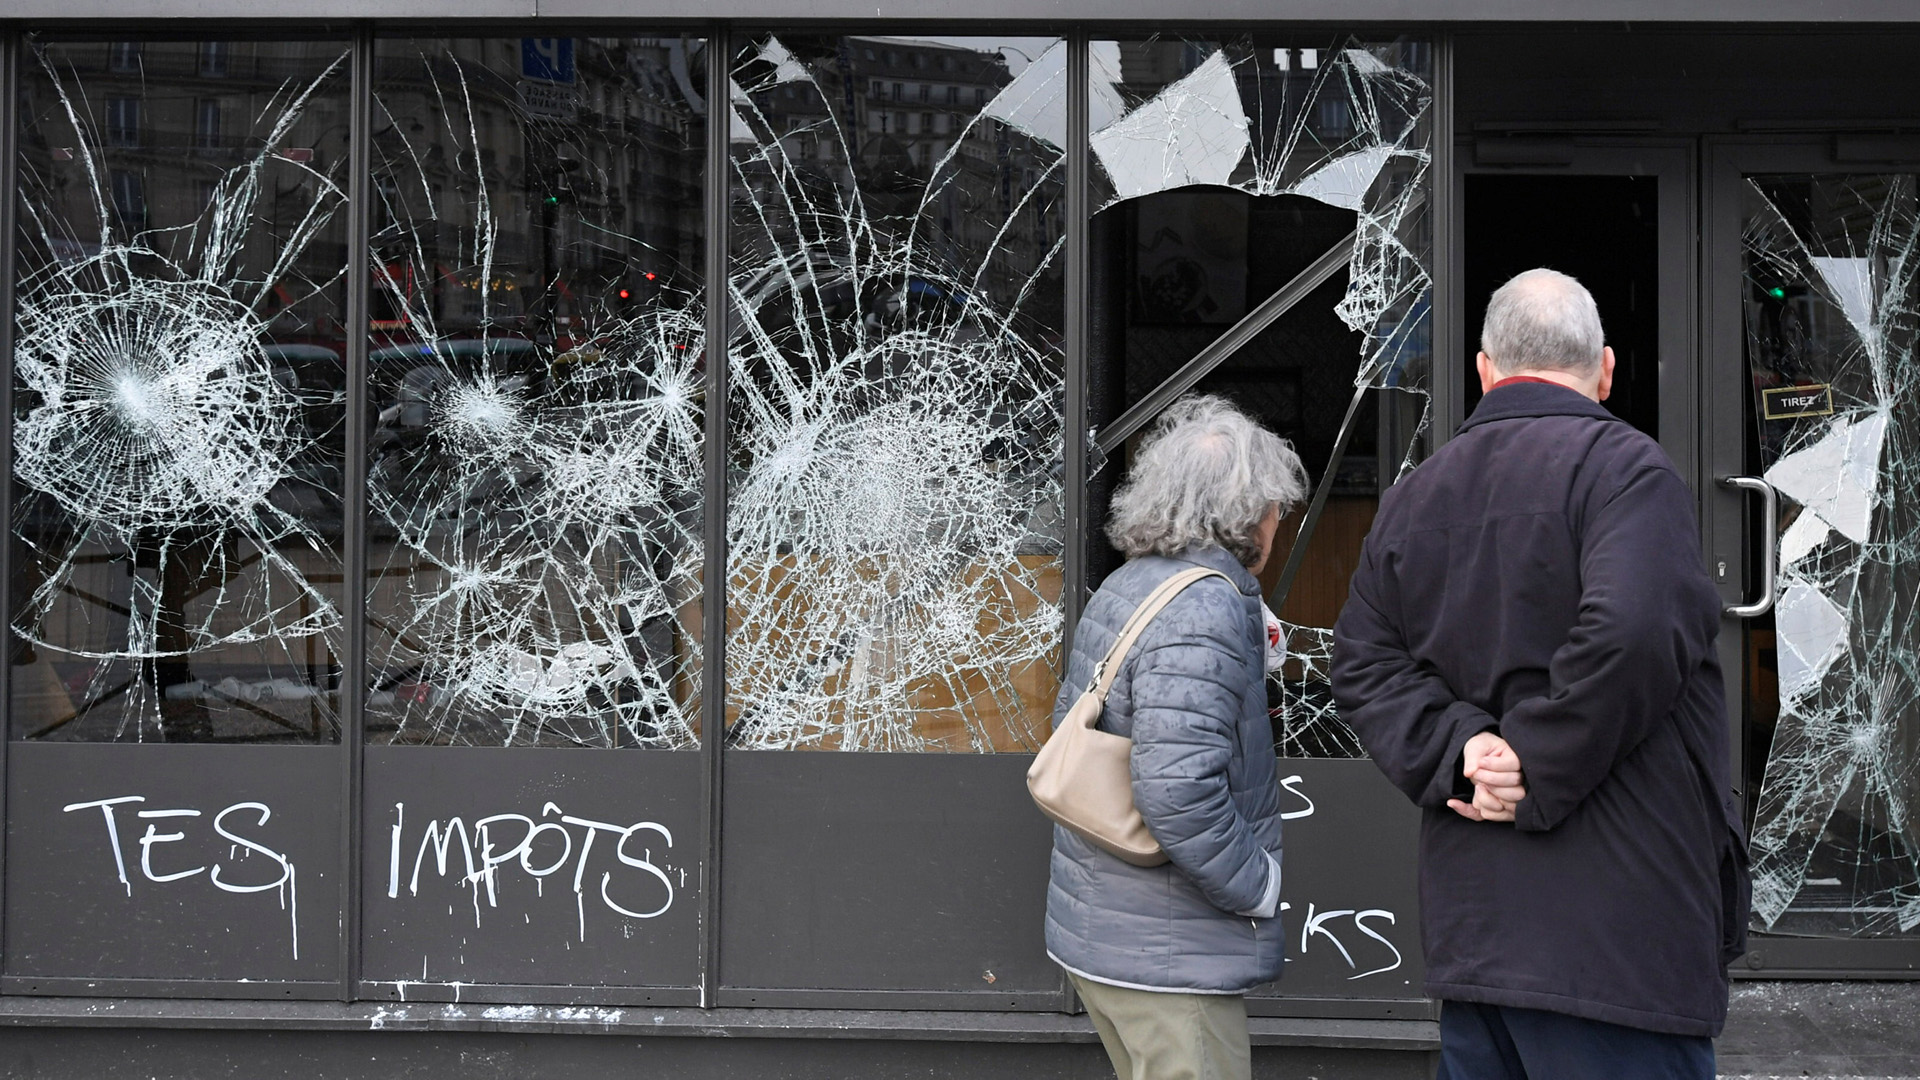 Eingeschlagene Scheiben an einer Starbucks-Filiale in Paris | Bildquelle: REUTERS